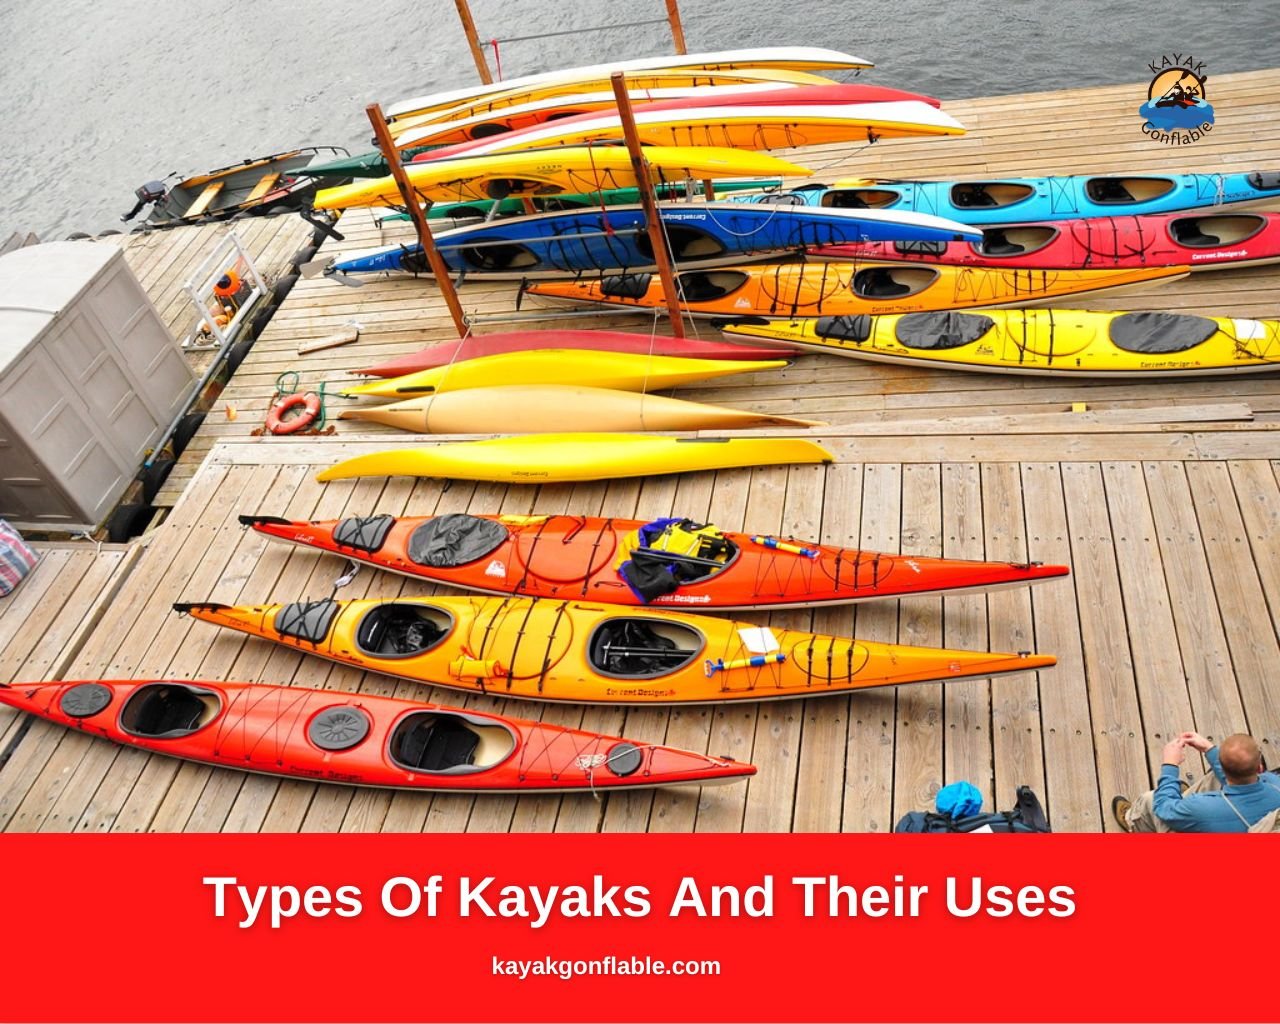 Tipos-de-kayaks-y-sus-usos